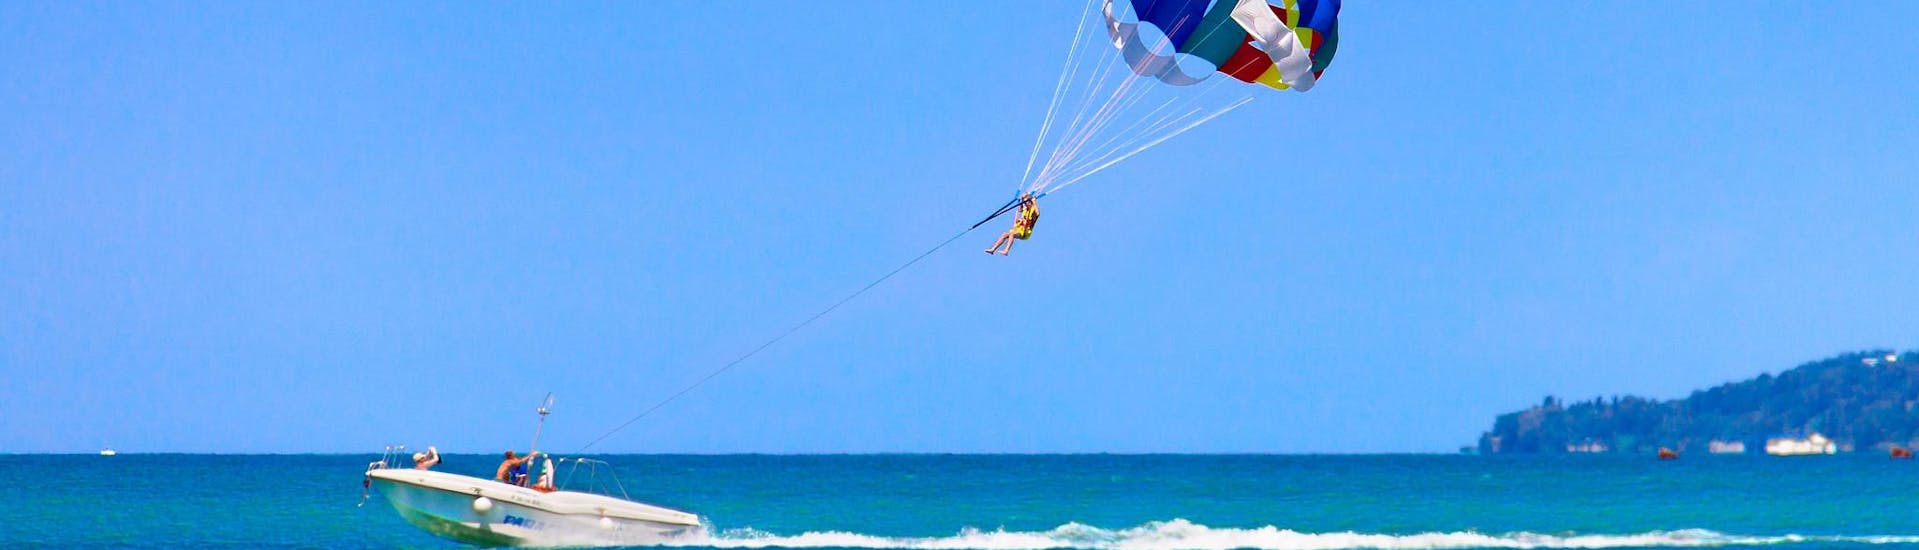 Een persoon die plezier heeft tijdens een parasailing activiteit.